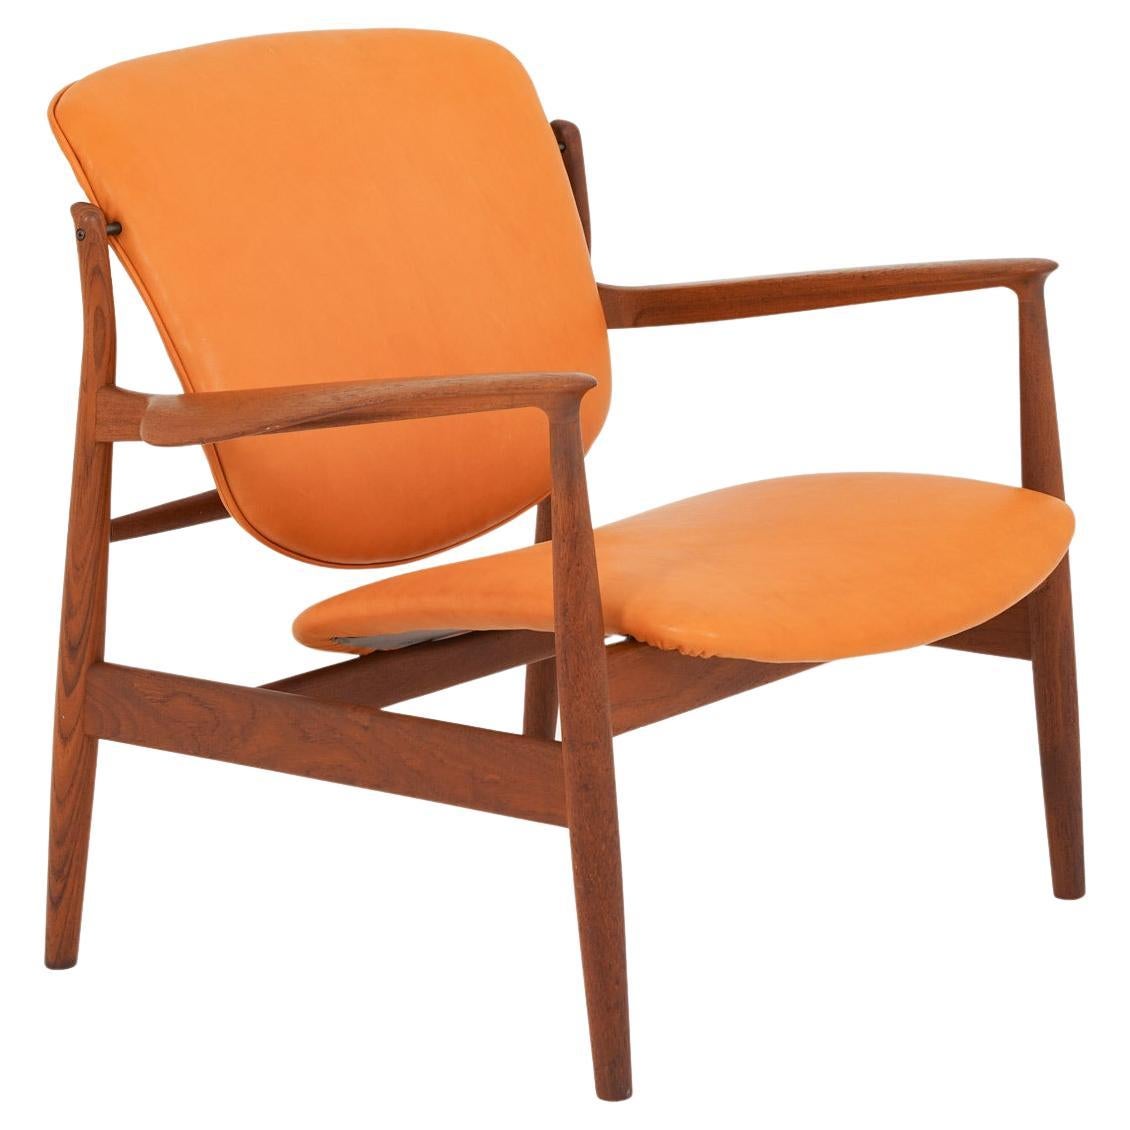 Finn Juhl Cognac Leather and Teak Lounge Chair model FD 136